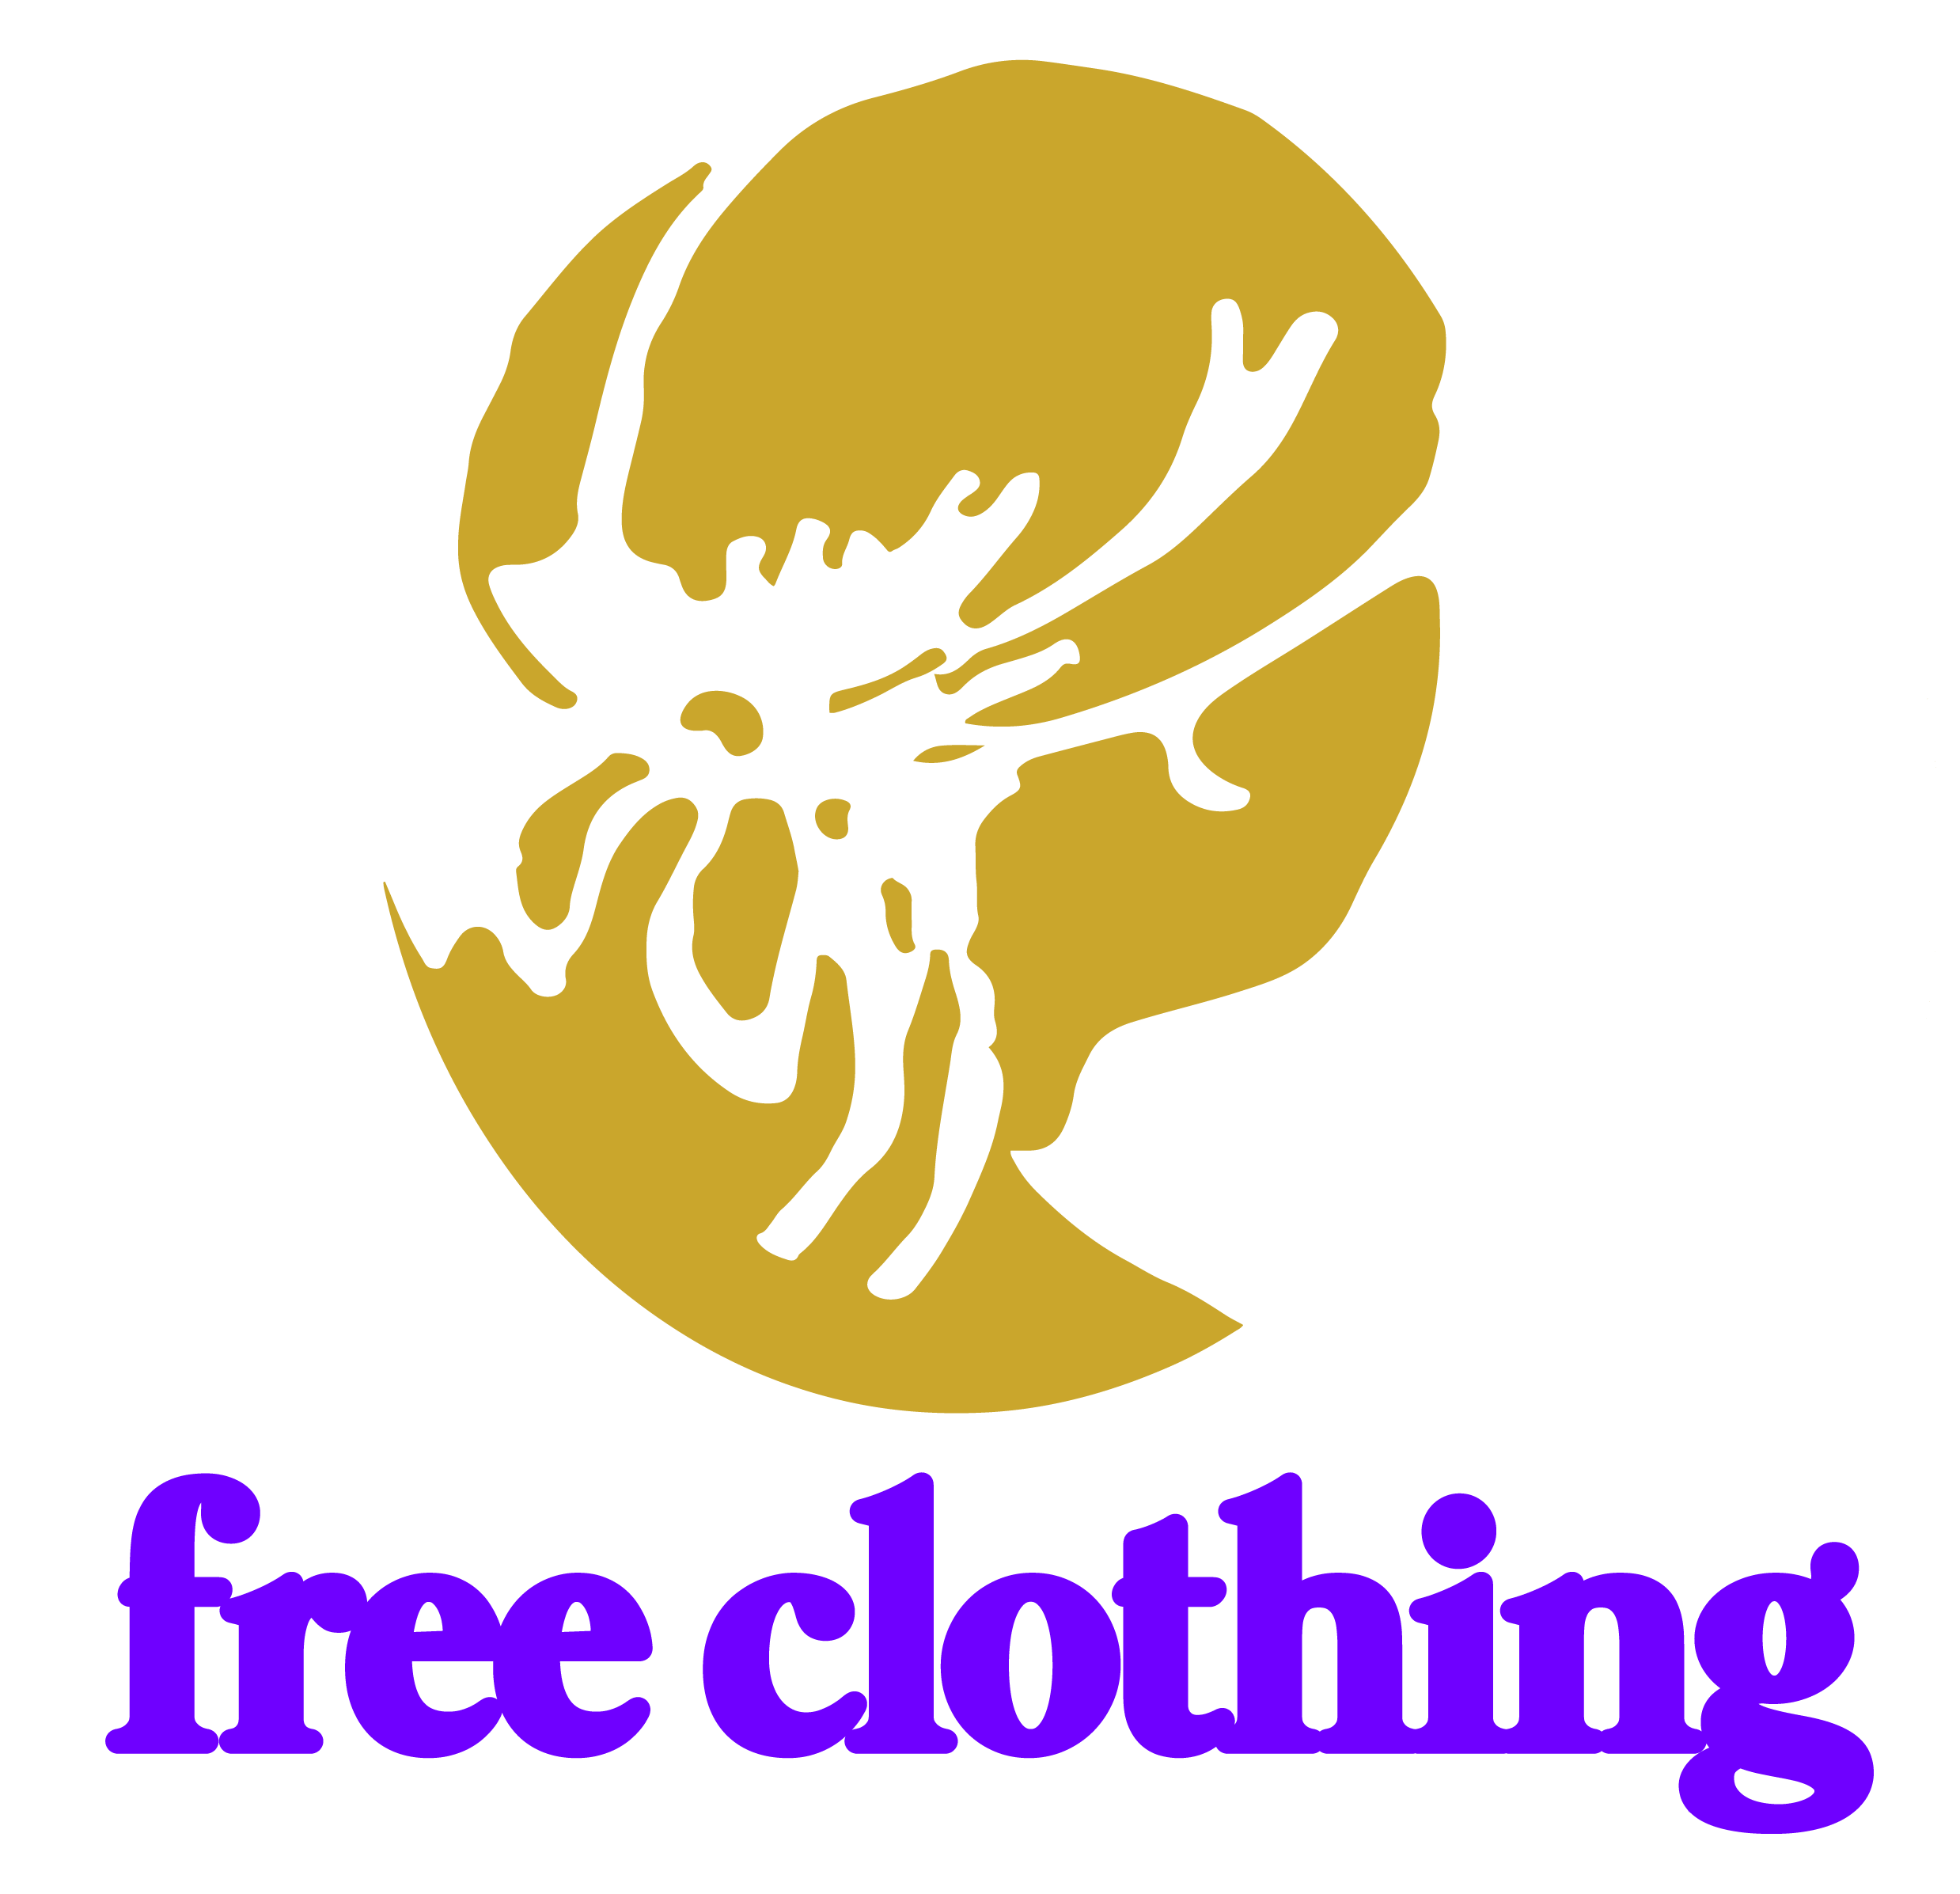 free clothing